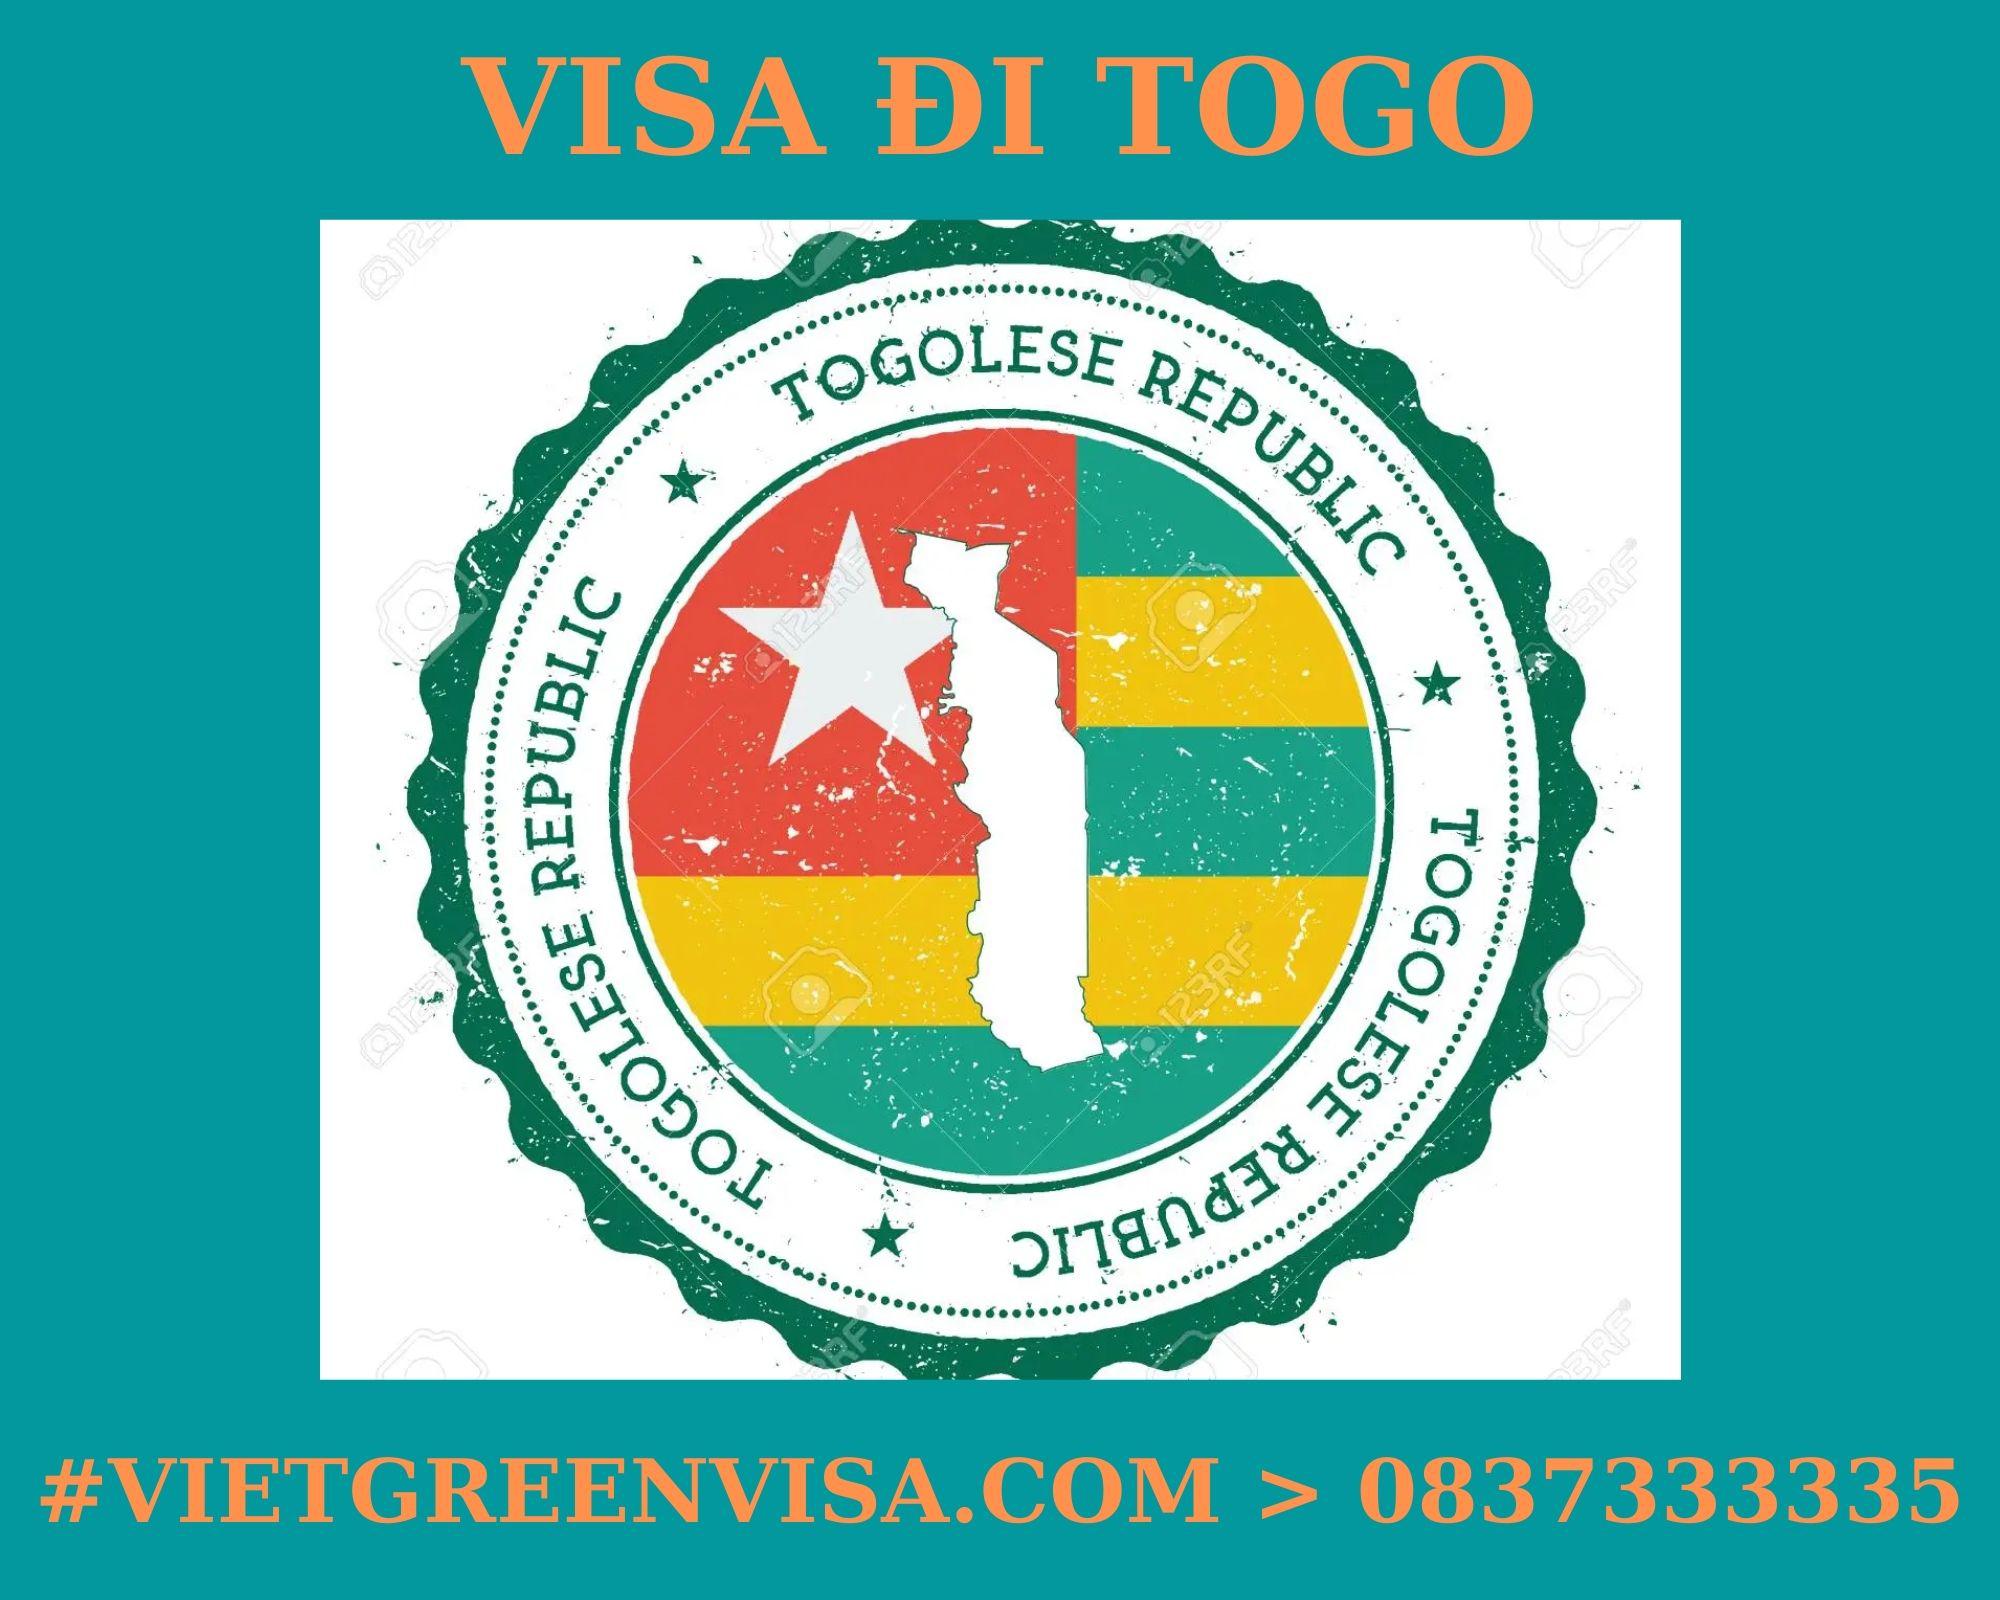 Làm Visa Togo thăm thân uy tín, nhanh chóng